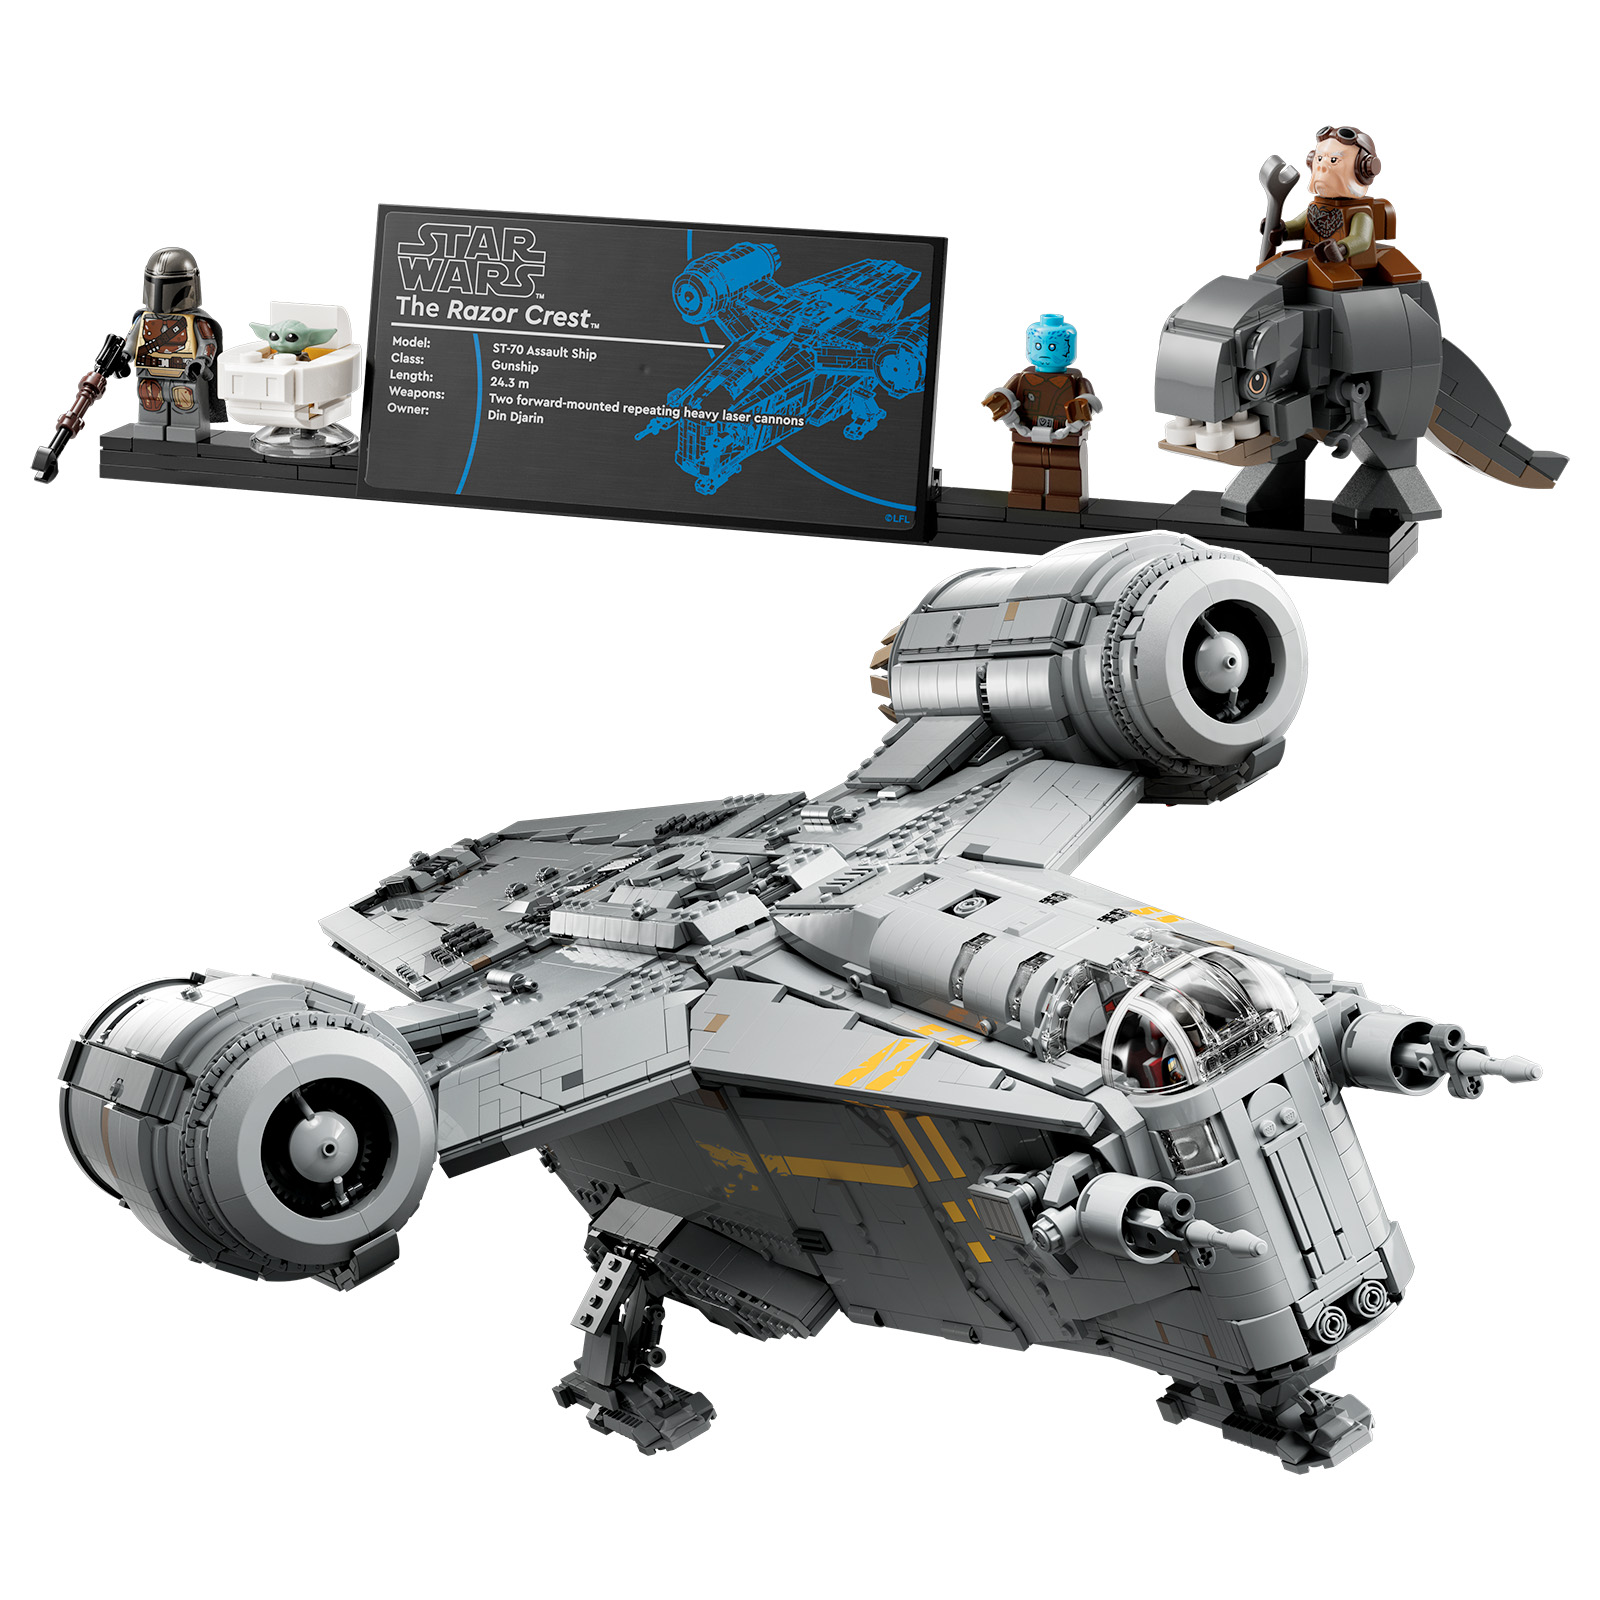 مجموعات LEGO Star Wars Ultimate Collector Series: ستتم طباعة لوحات العرض قريبًا